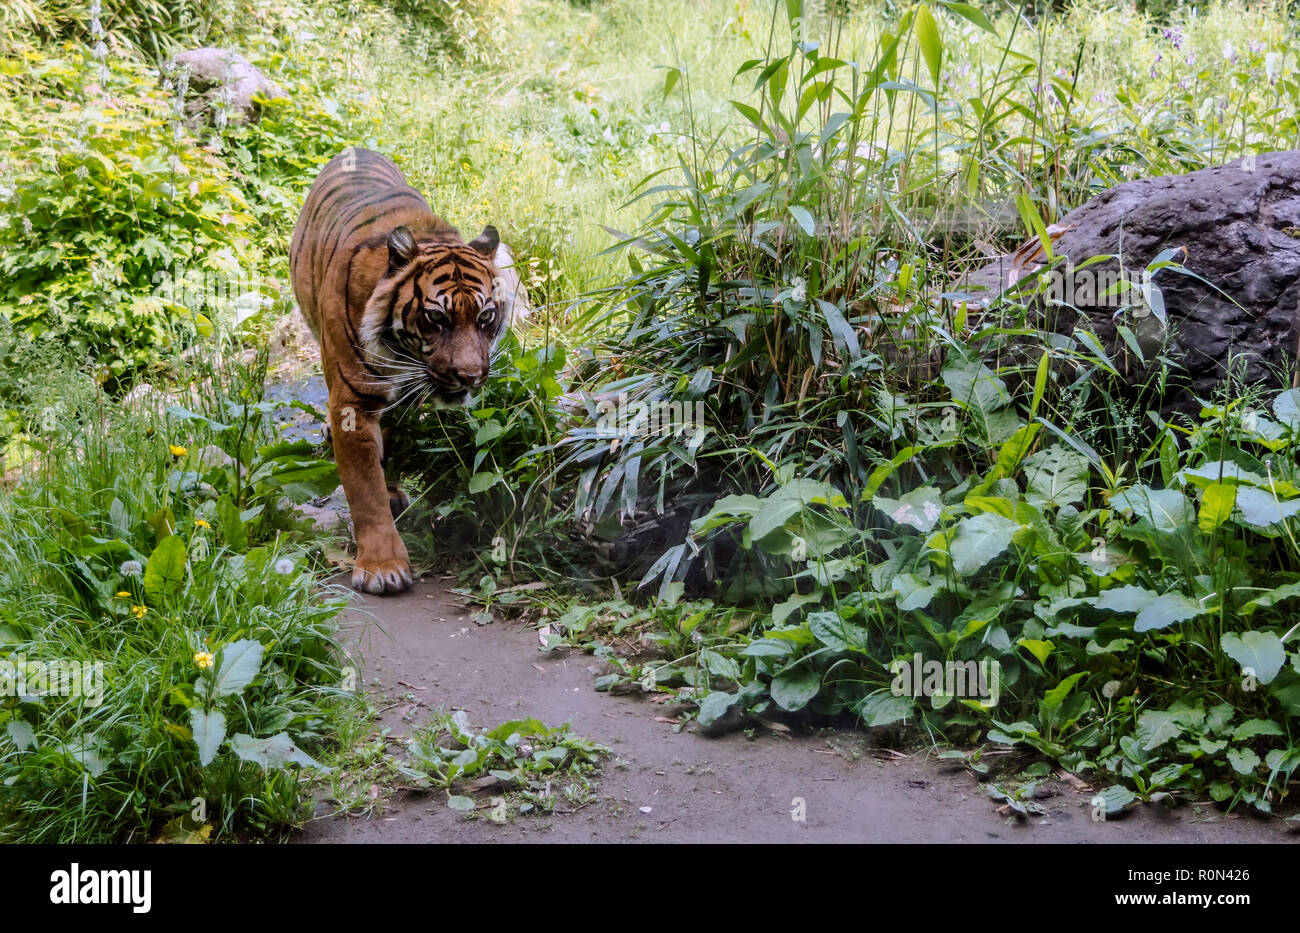 Tigre de Sumatra (Panthera tigris sondaica) marcher dans le chemin dans les bois. Les tigres sont essentiellement diurnes. Banque D'Images